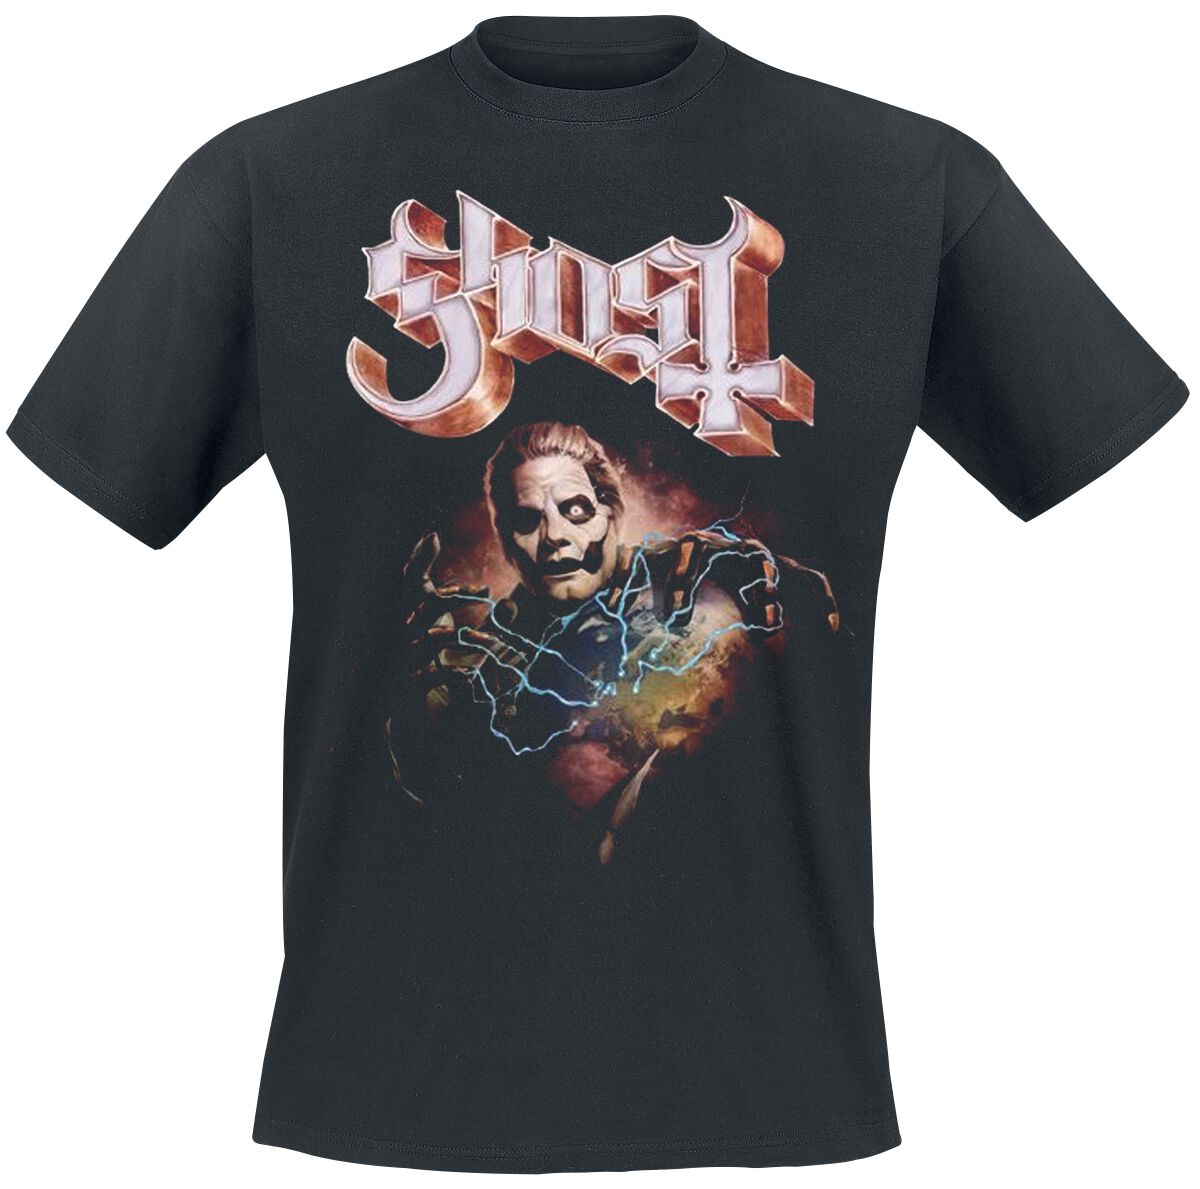 Ghost T-Shirt - Europe 23 Admat Tour Shirt - S bis 4XL - für Männer - Größe XL - schwarz  - Lizenziertes Merchandise!